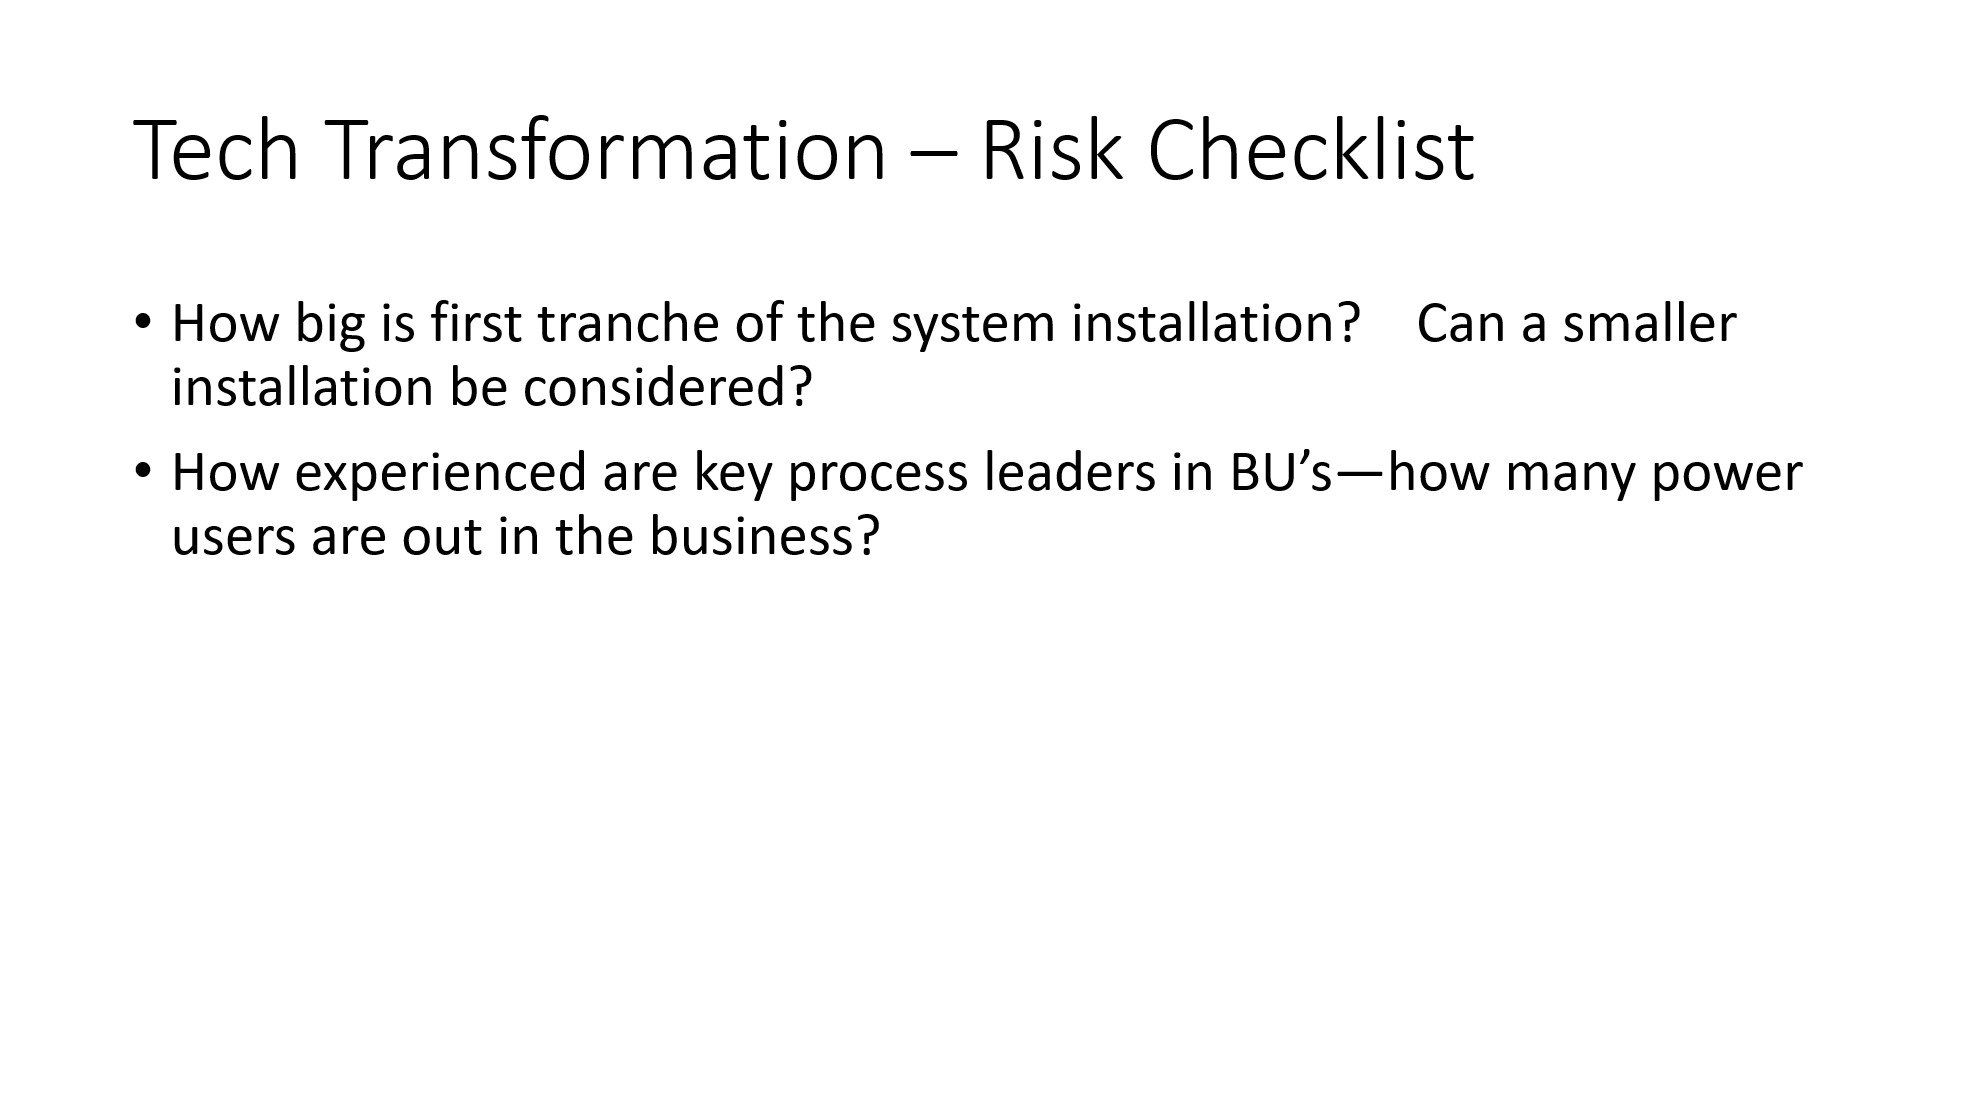 Tech Transformation - Risk Checklist 2.jpg